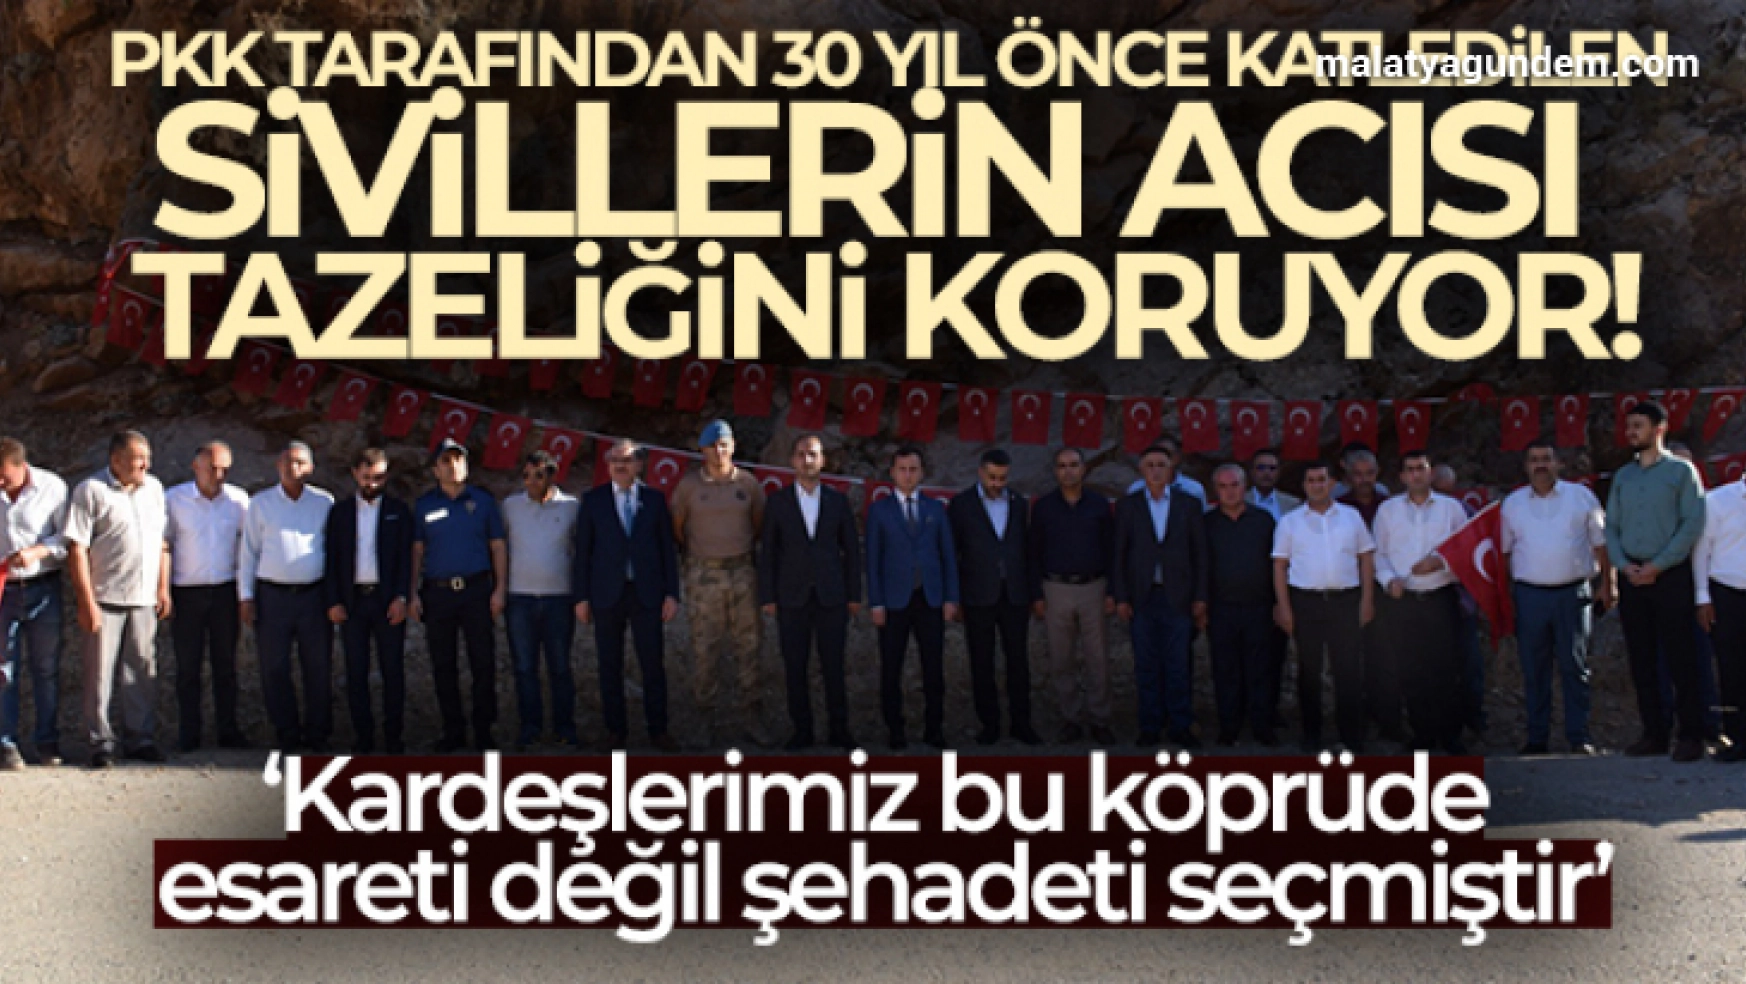 PKK'lılar tarafından 30 yıl önce önce katledildiler, sonra yakıldılar